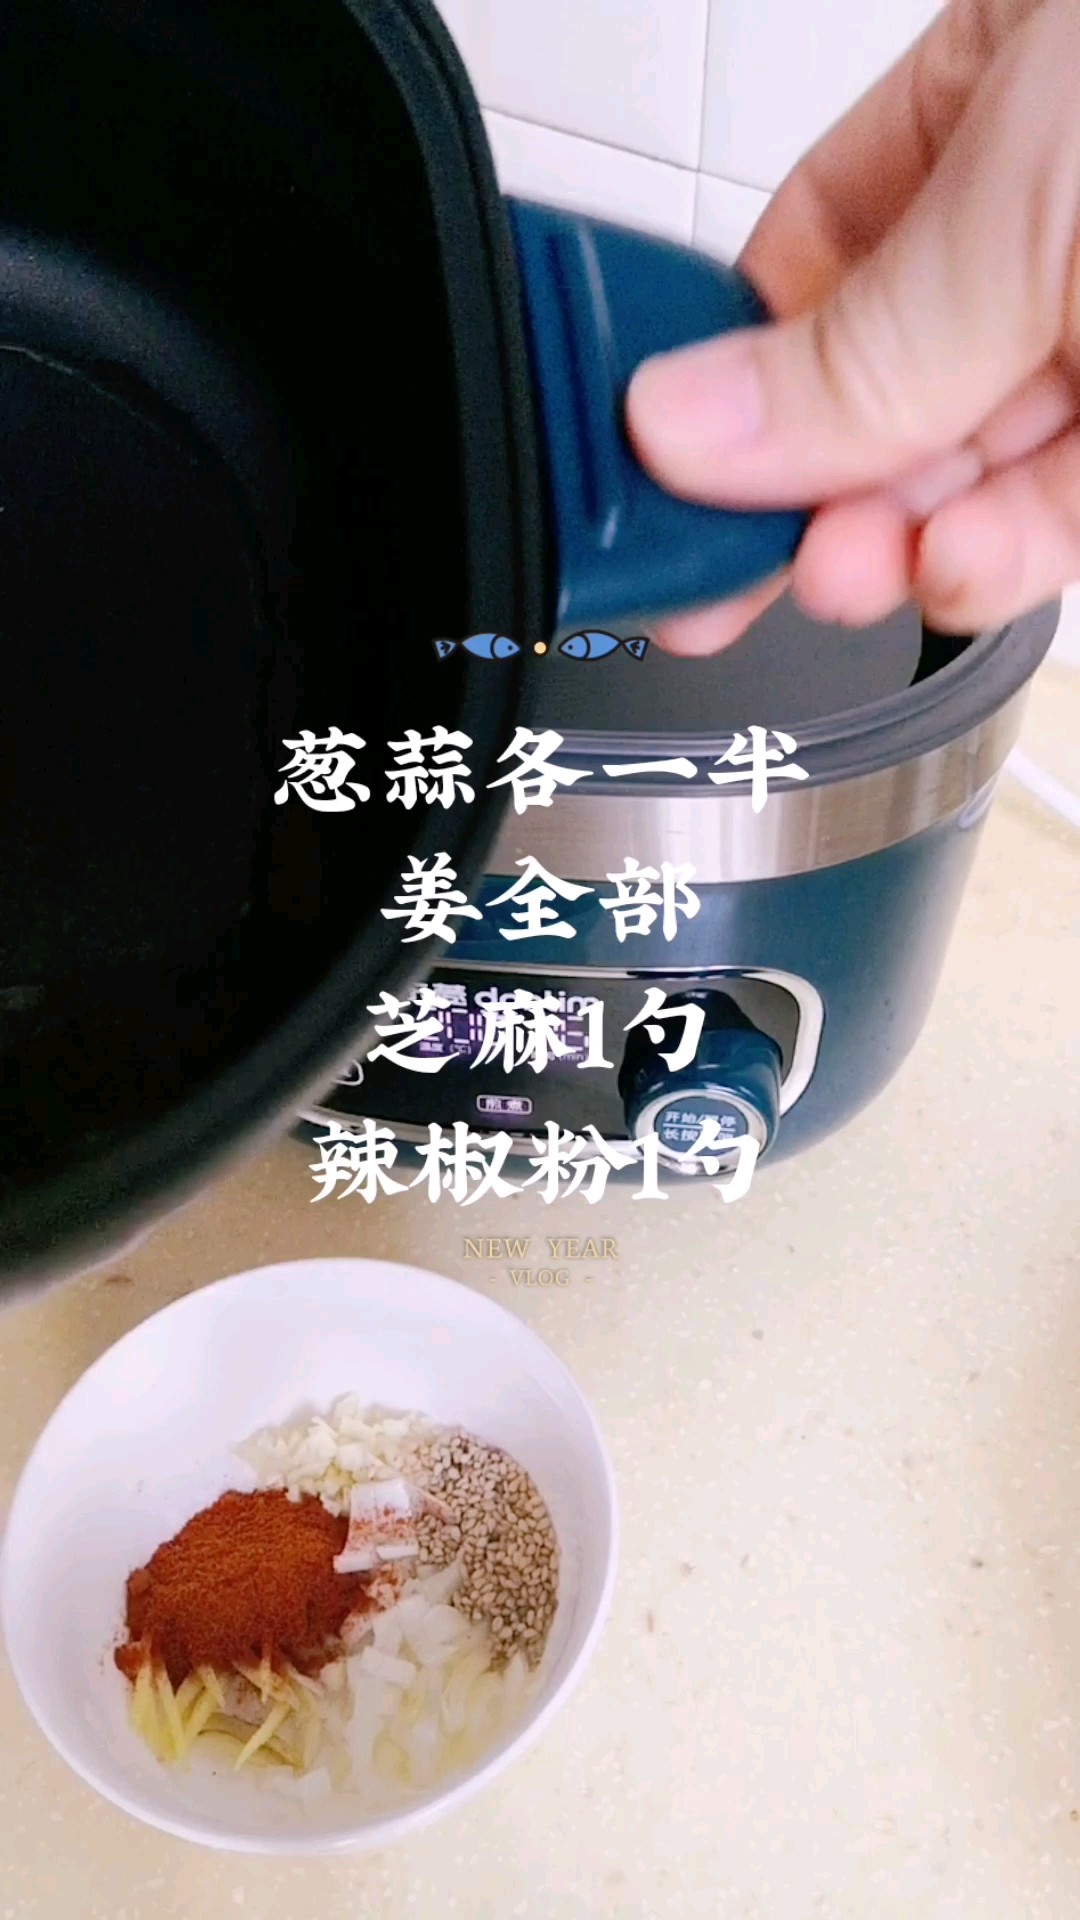 Cold Noodles in Sour Soup recipe